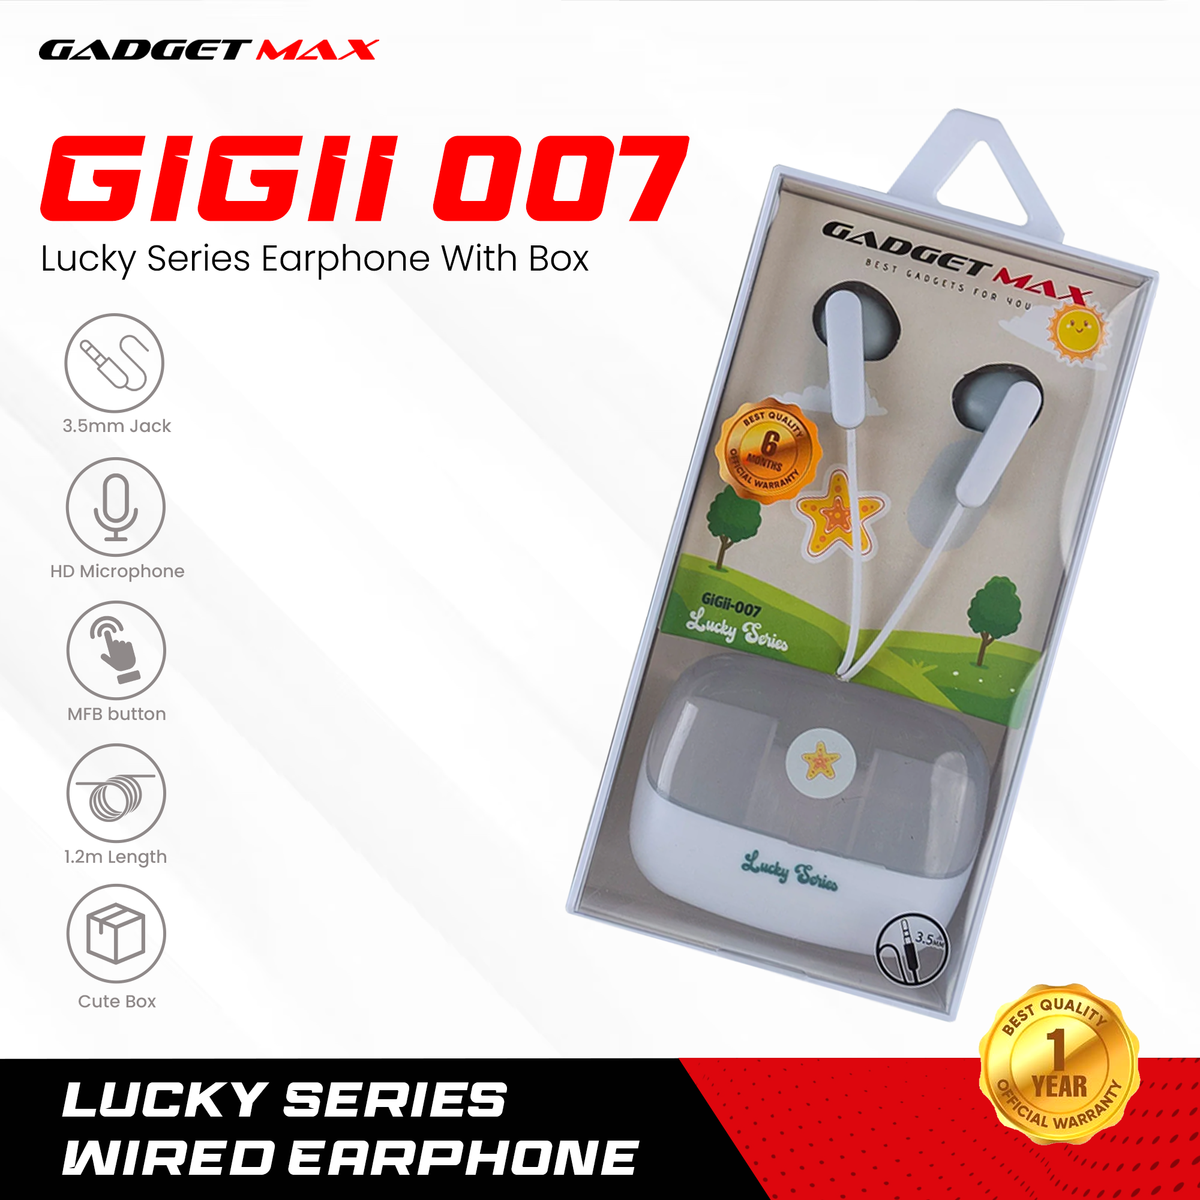 GADGET MAX GIGII-007 LUCKY SERIES  3.5MM EARPHONE - GREY